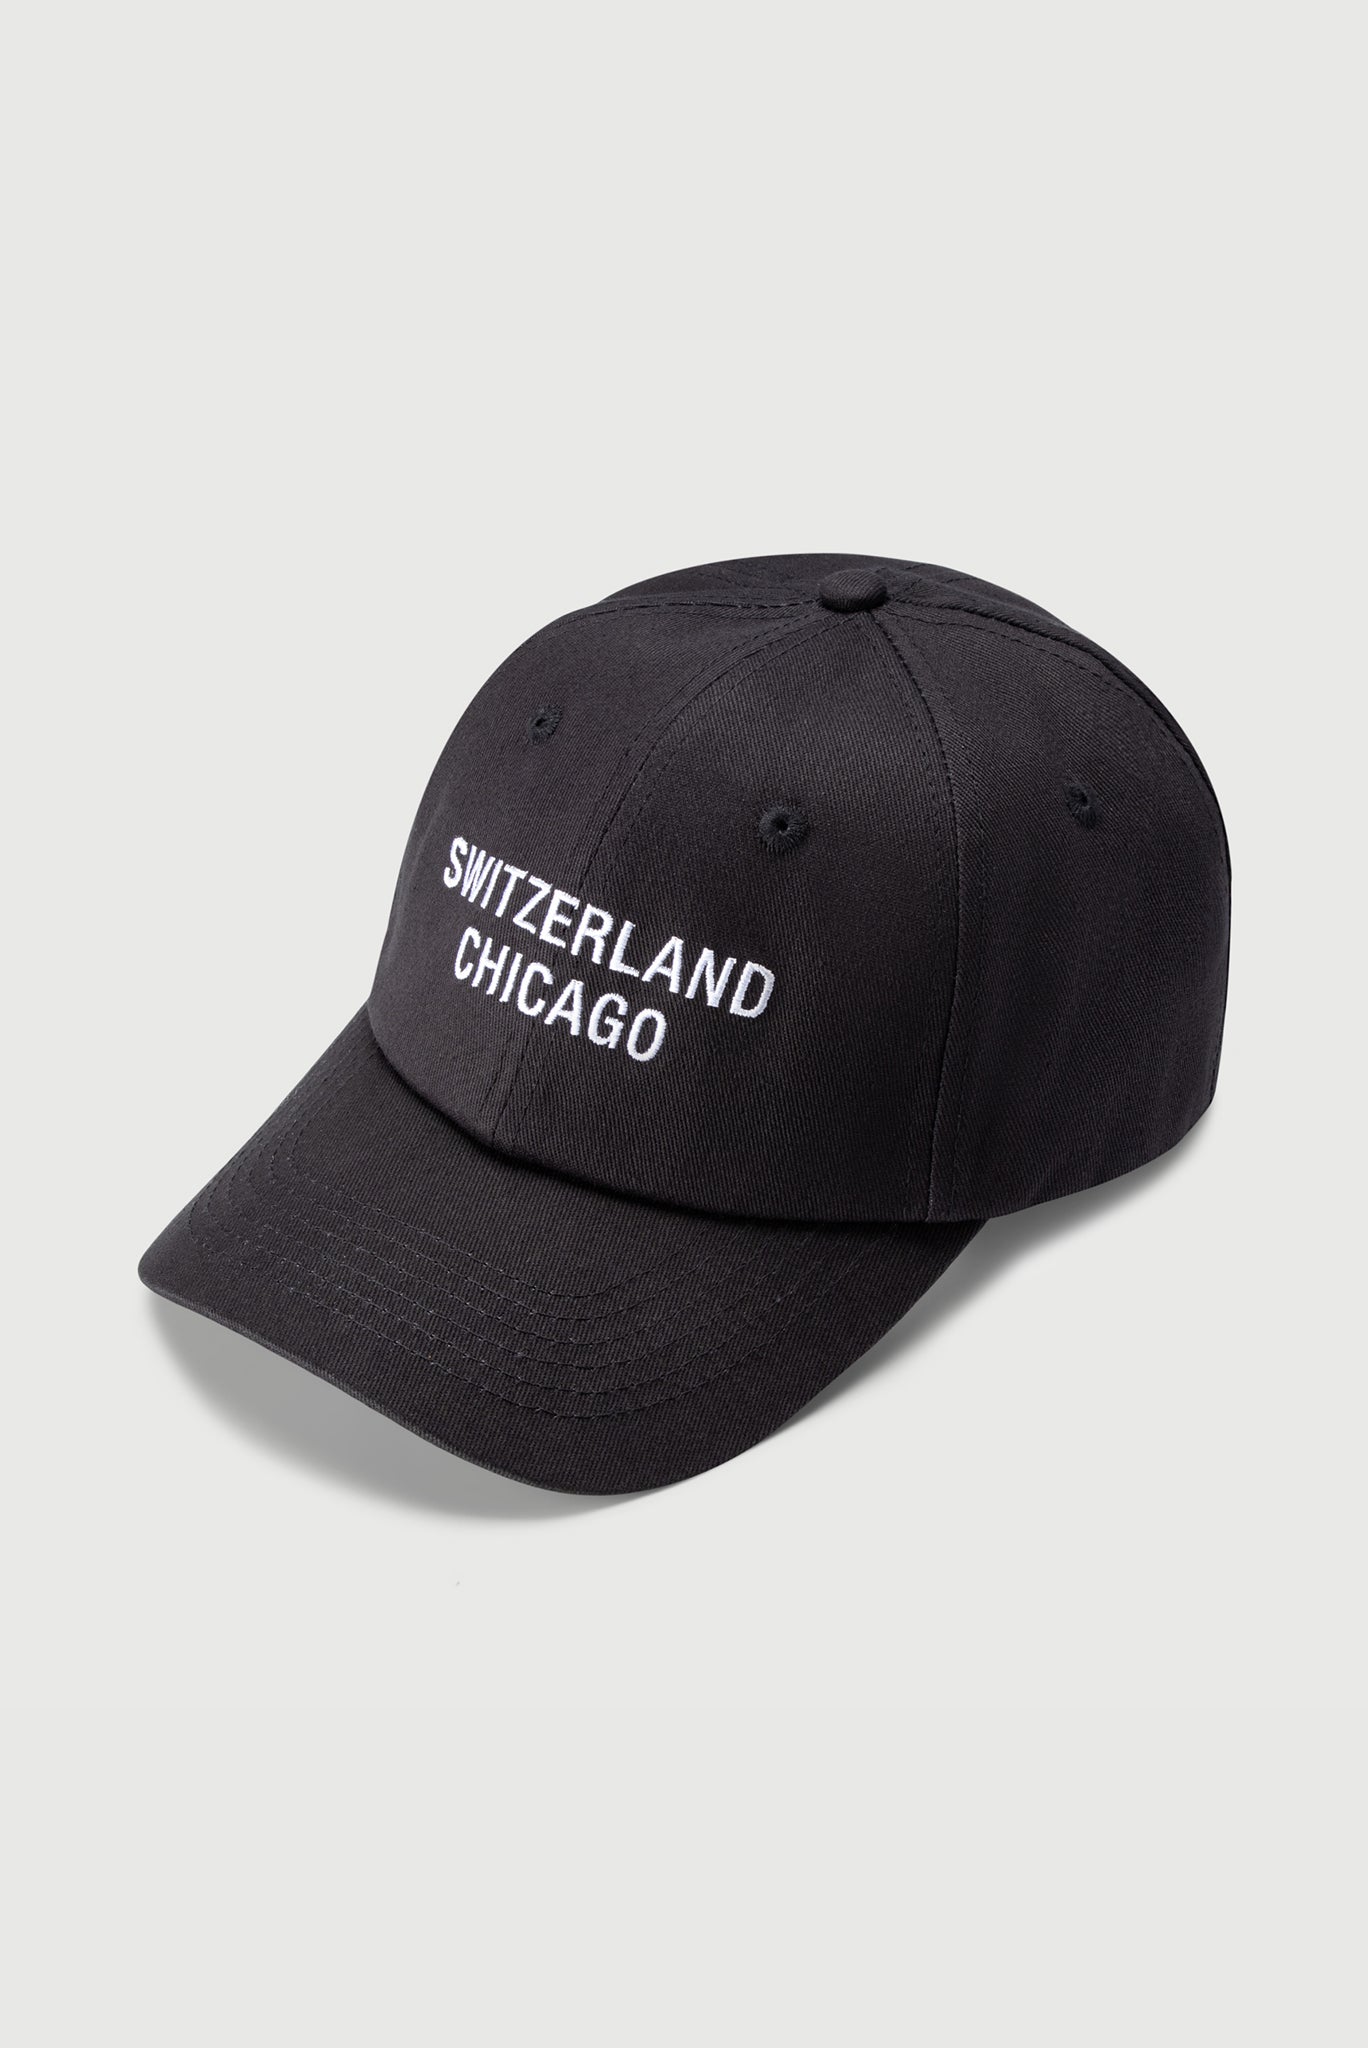 Switzerland Chicago Hat in Black